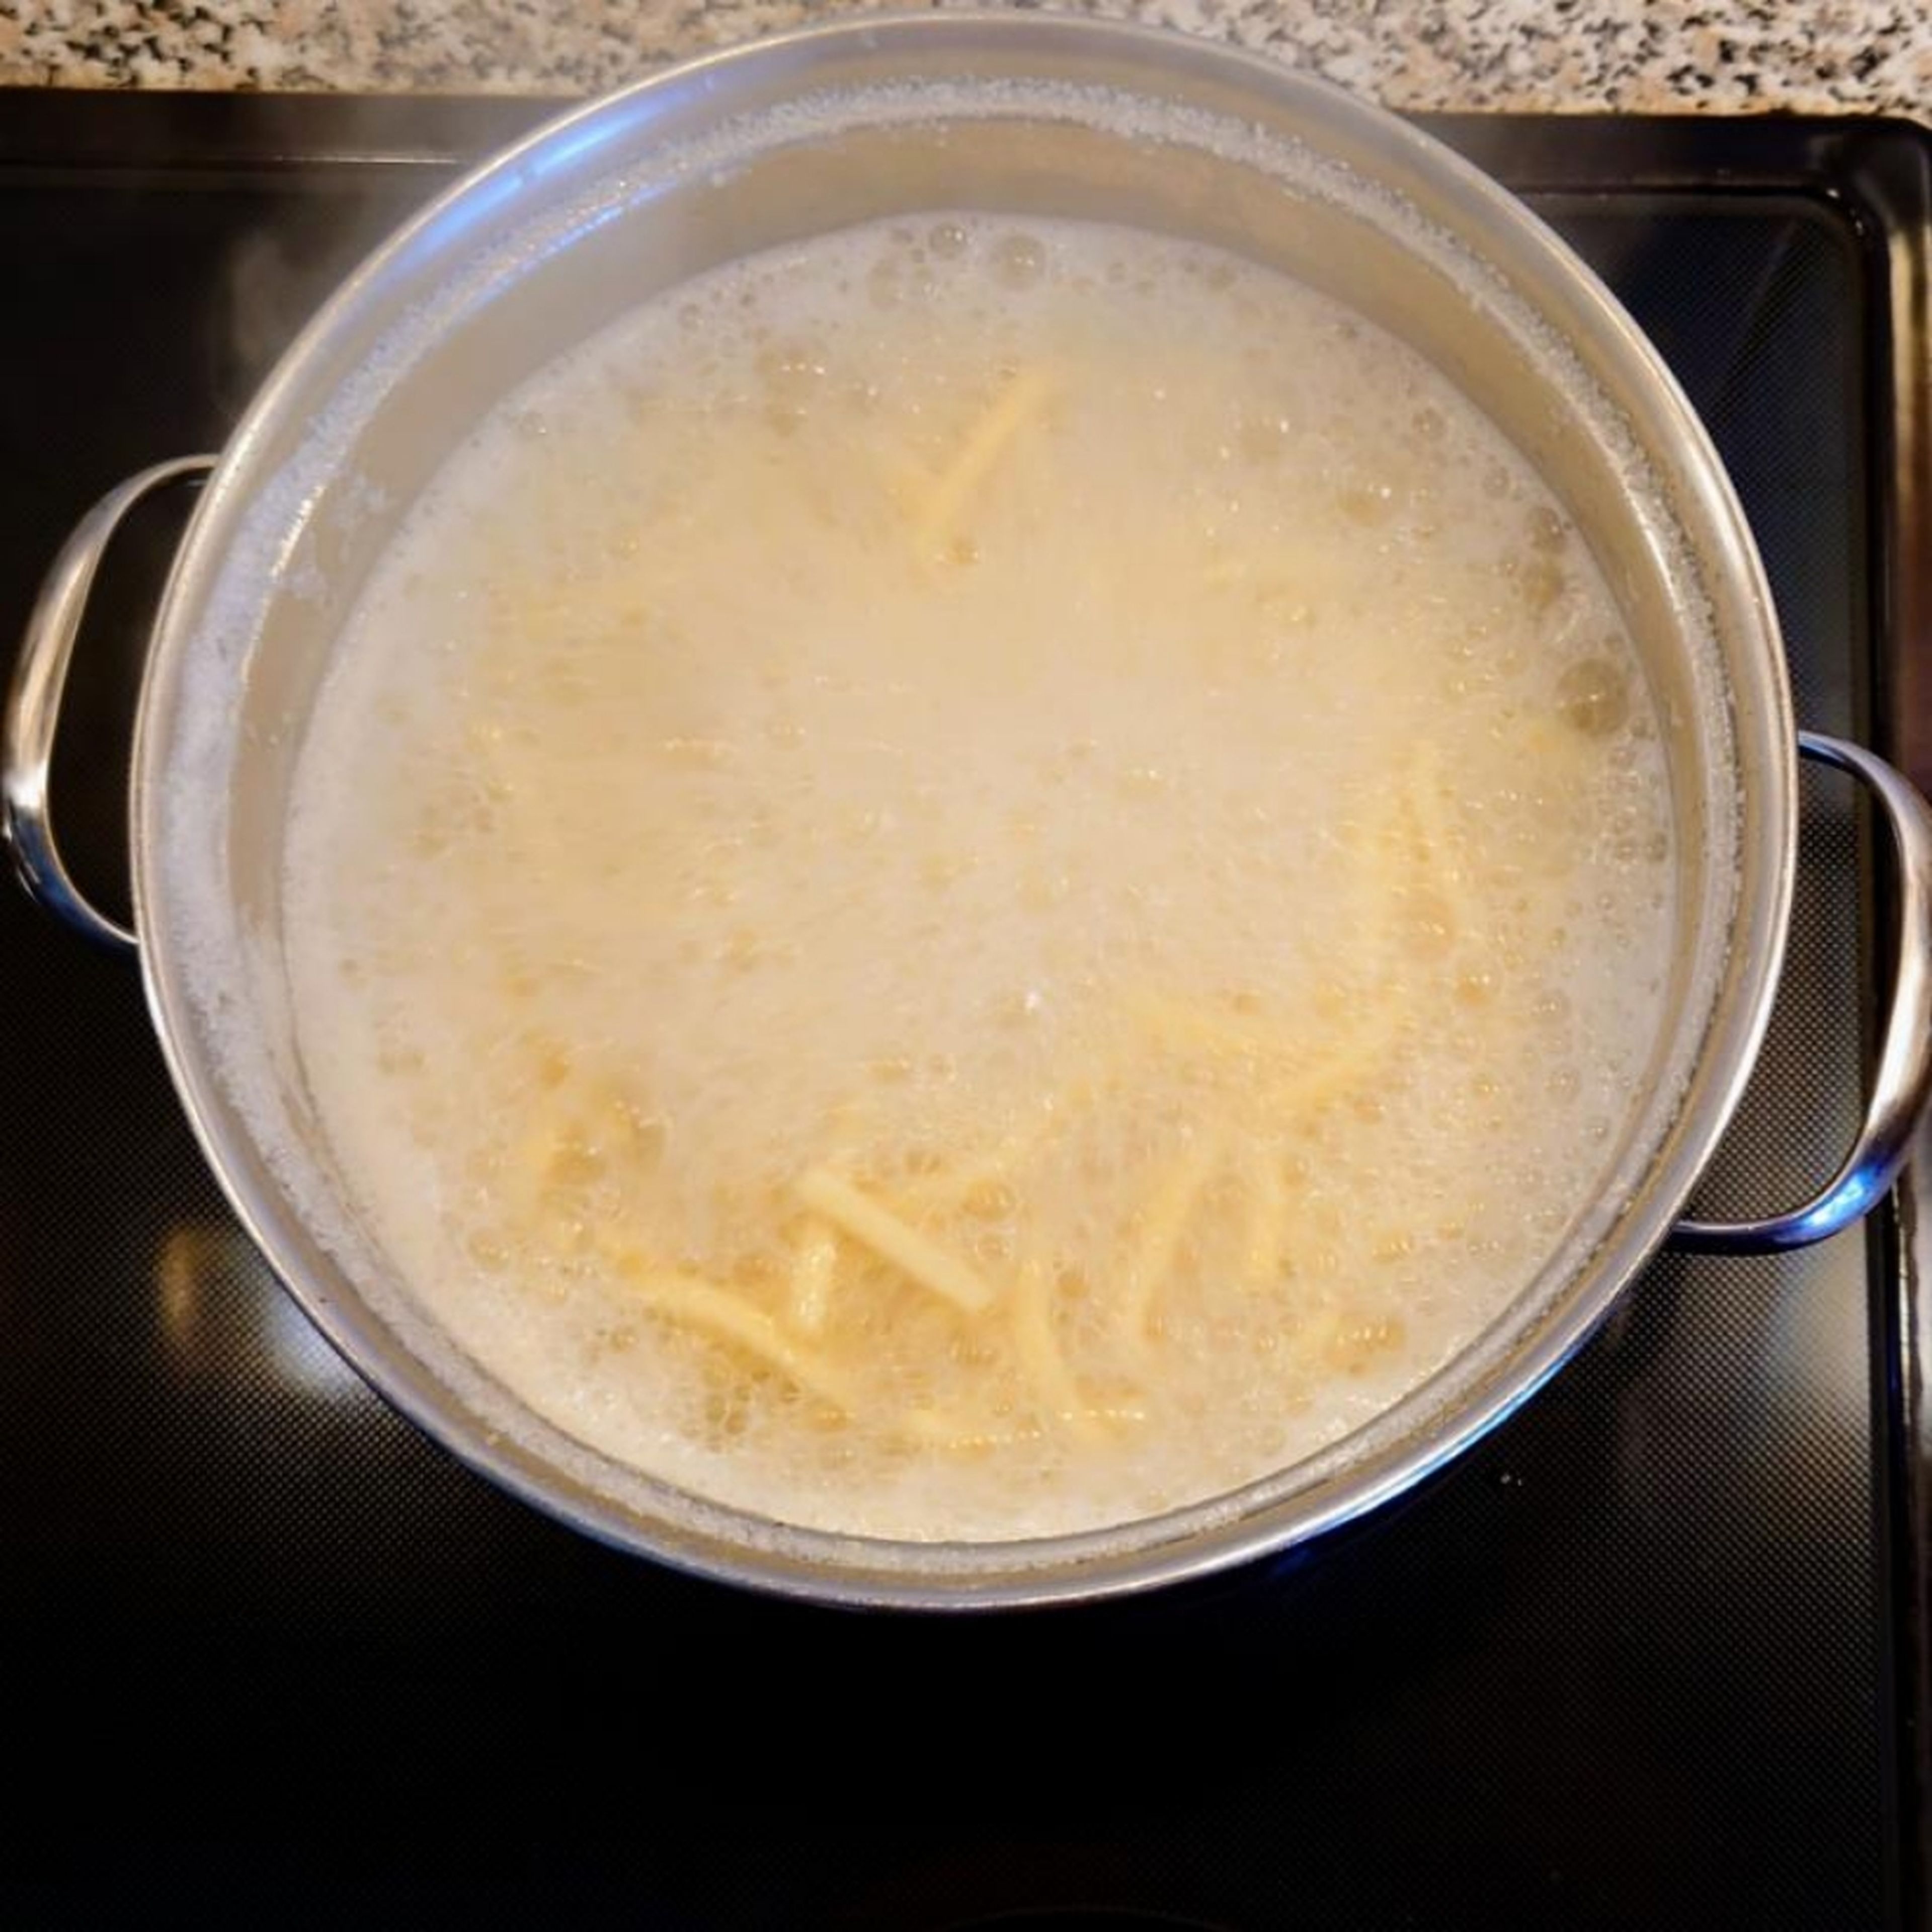 Die Auflaufform für 25 Minuten in den Backofen schieben. Während der Backzeit Nudeln dazu kochen. Am Besten schmecken Spätzle. Es können aber auch Spaghetti oder Reis dazu serviert werden.